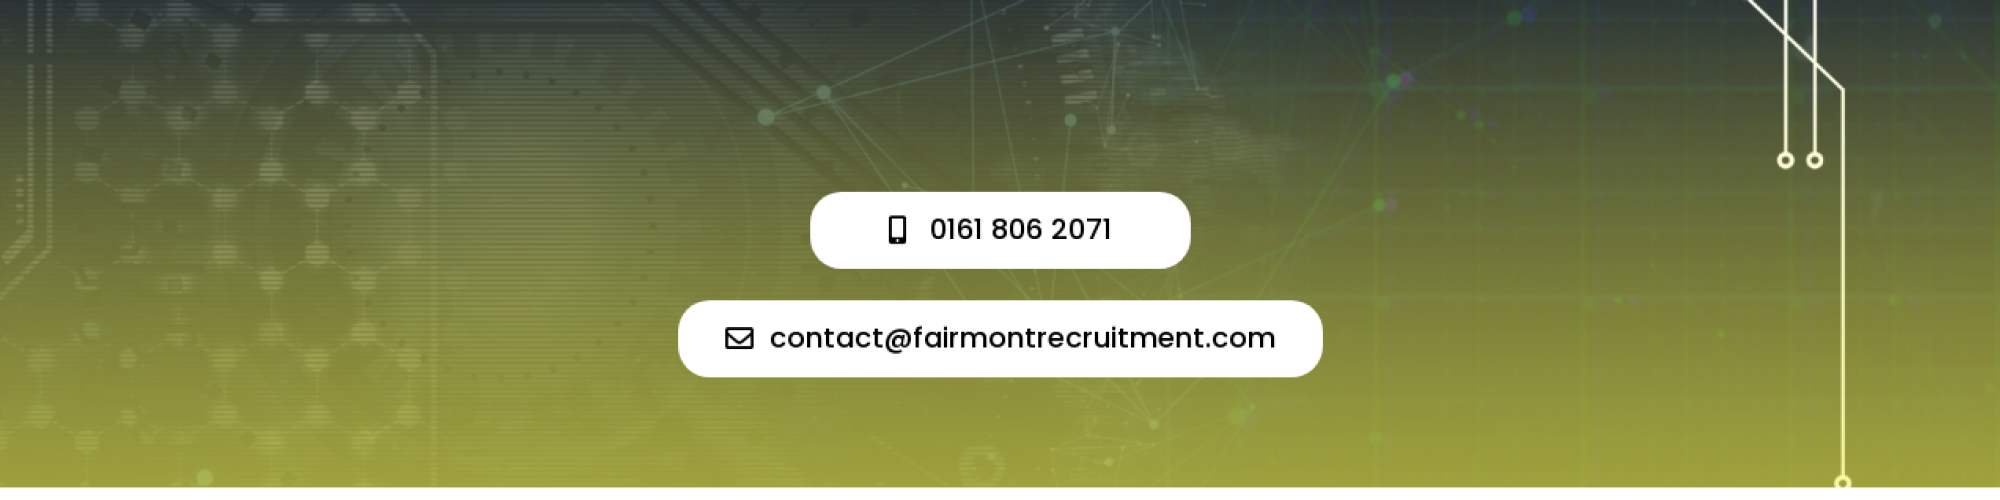 Fairmont Recruitment 